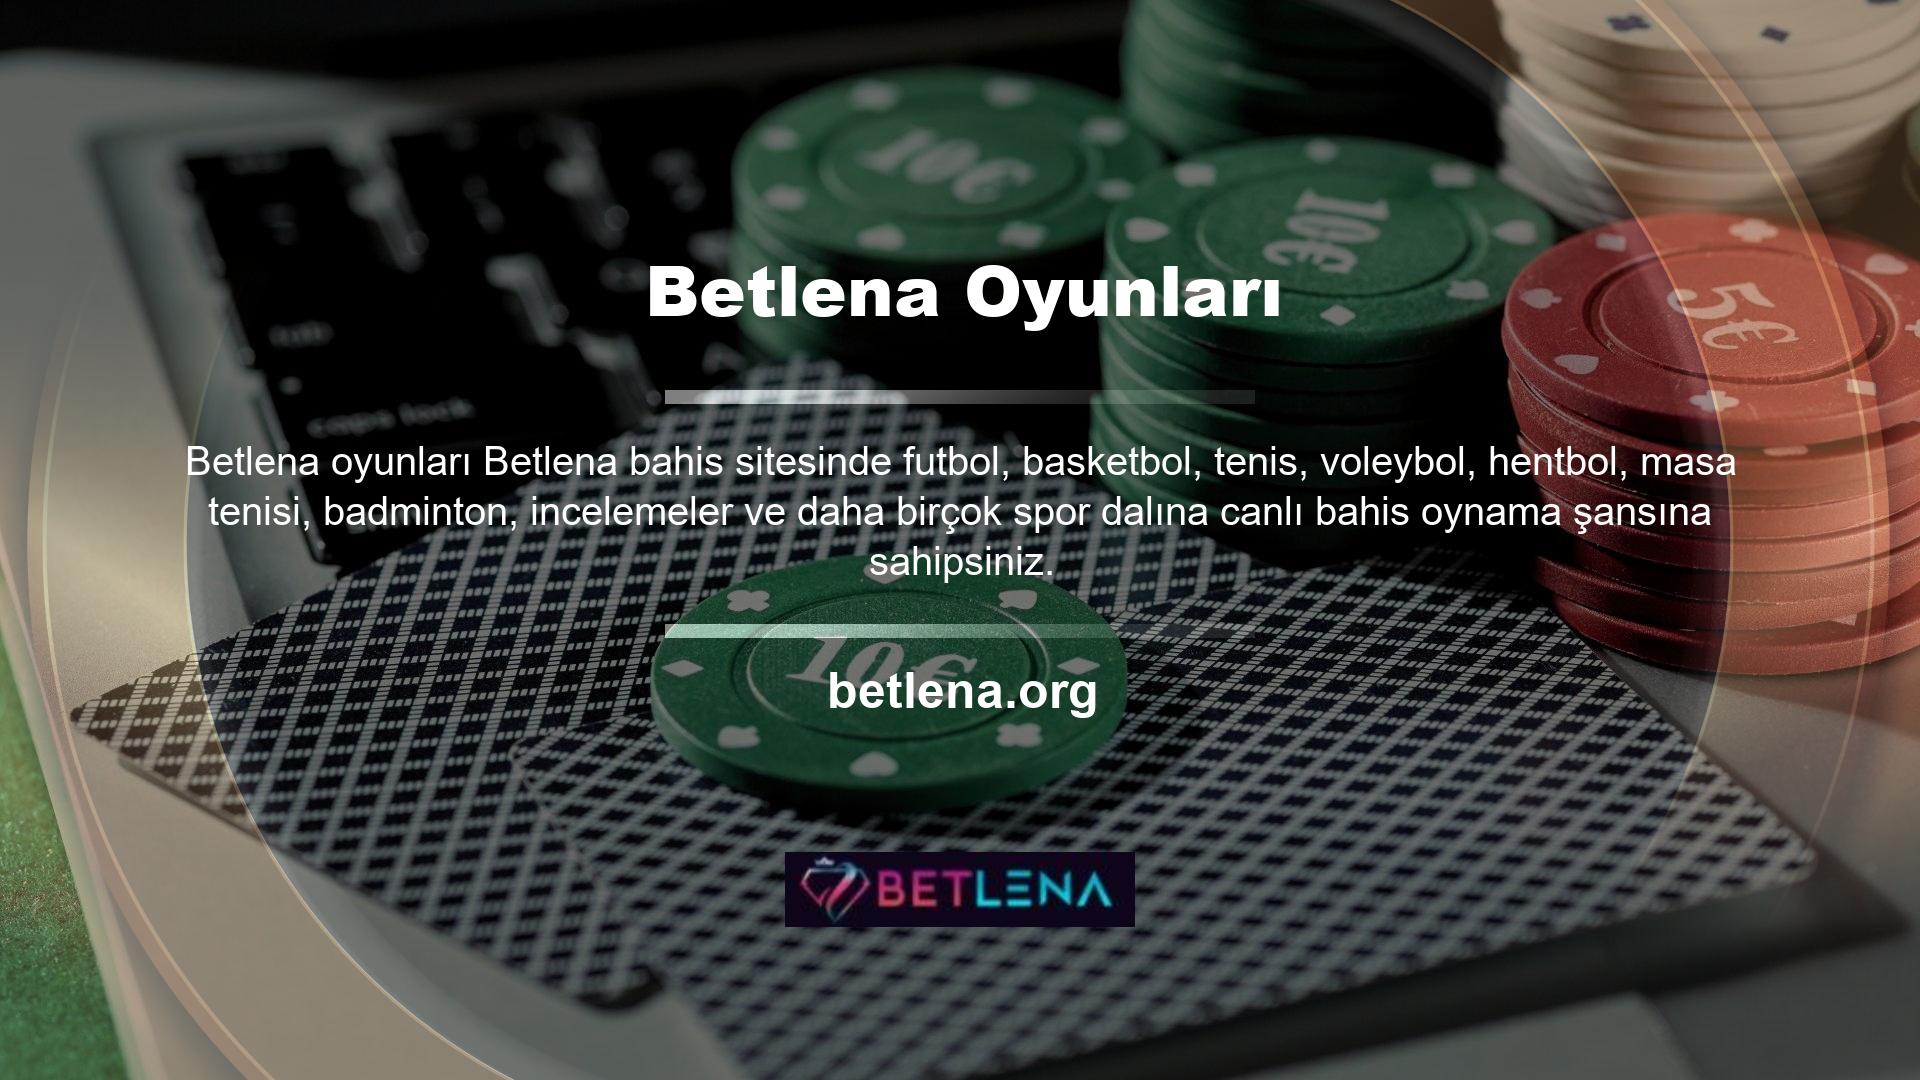 Betlena bahis siteleri müşterilerine her zaman kaliteli hizmet vermekte ve bu konuda sürekli olarak güncellenmekte ve geliştirilmektedir